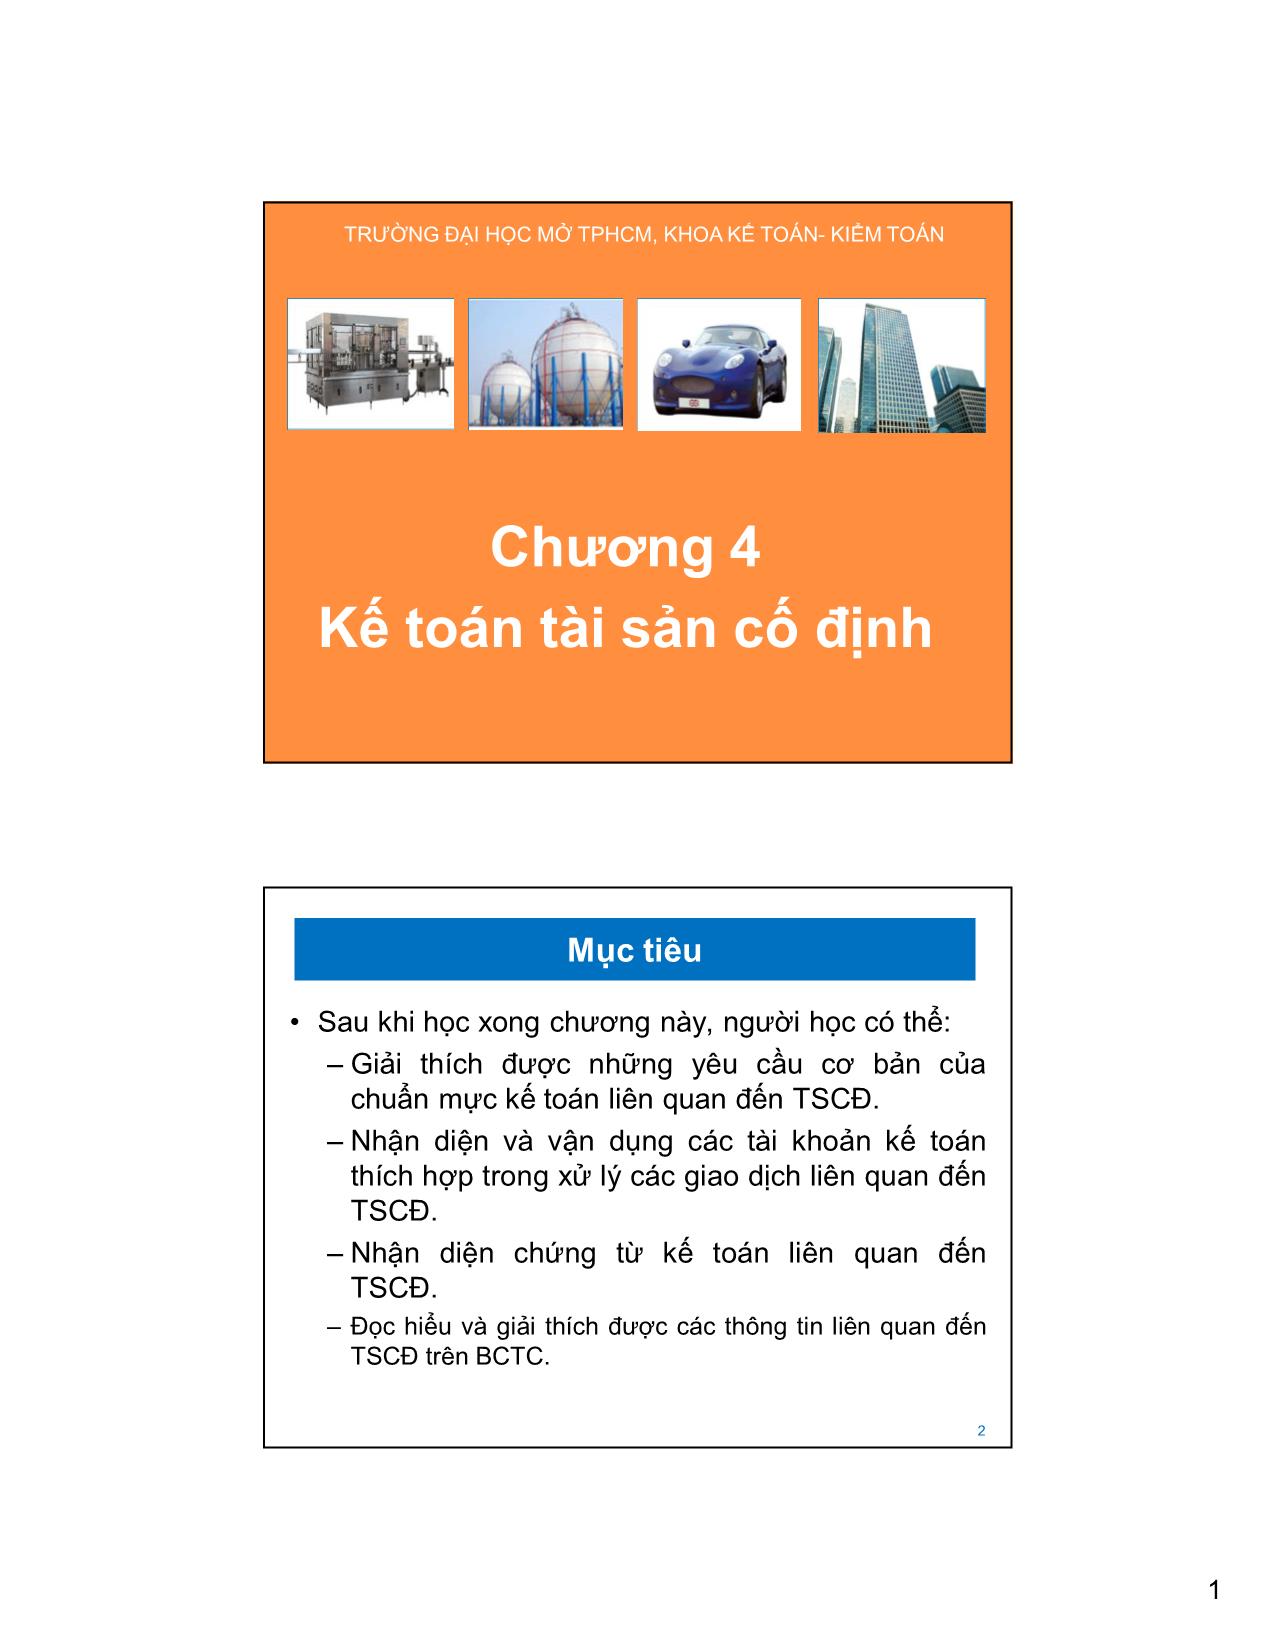 Bài giảng Kế toán tài chính và hệ thống kế toán Việt Nam 1 - Chương 4: Kế toán tài sản cố định trang 1